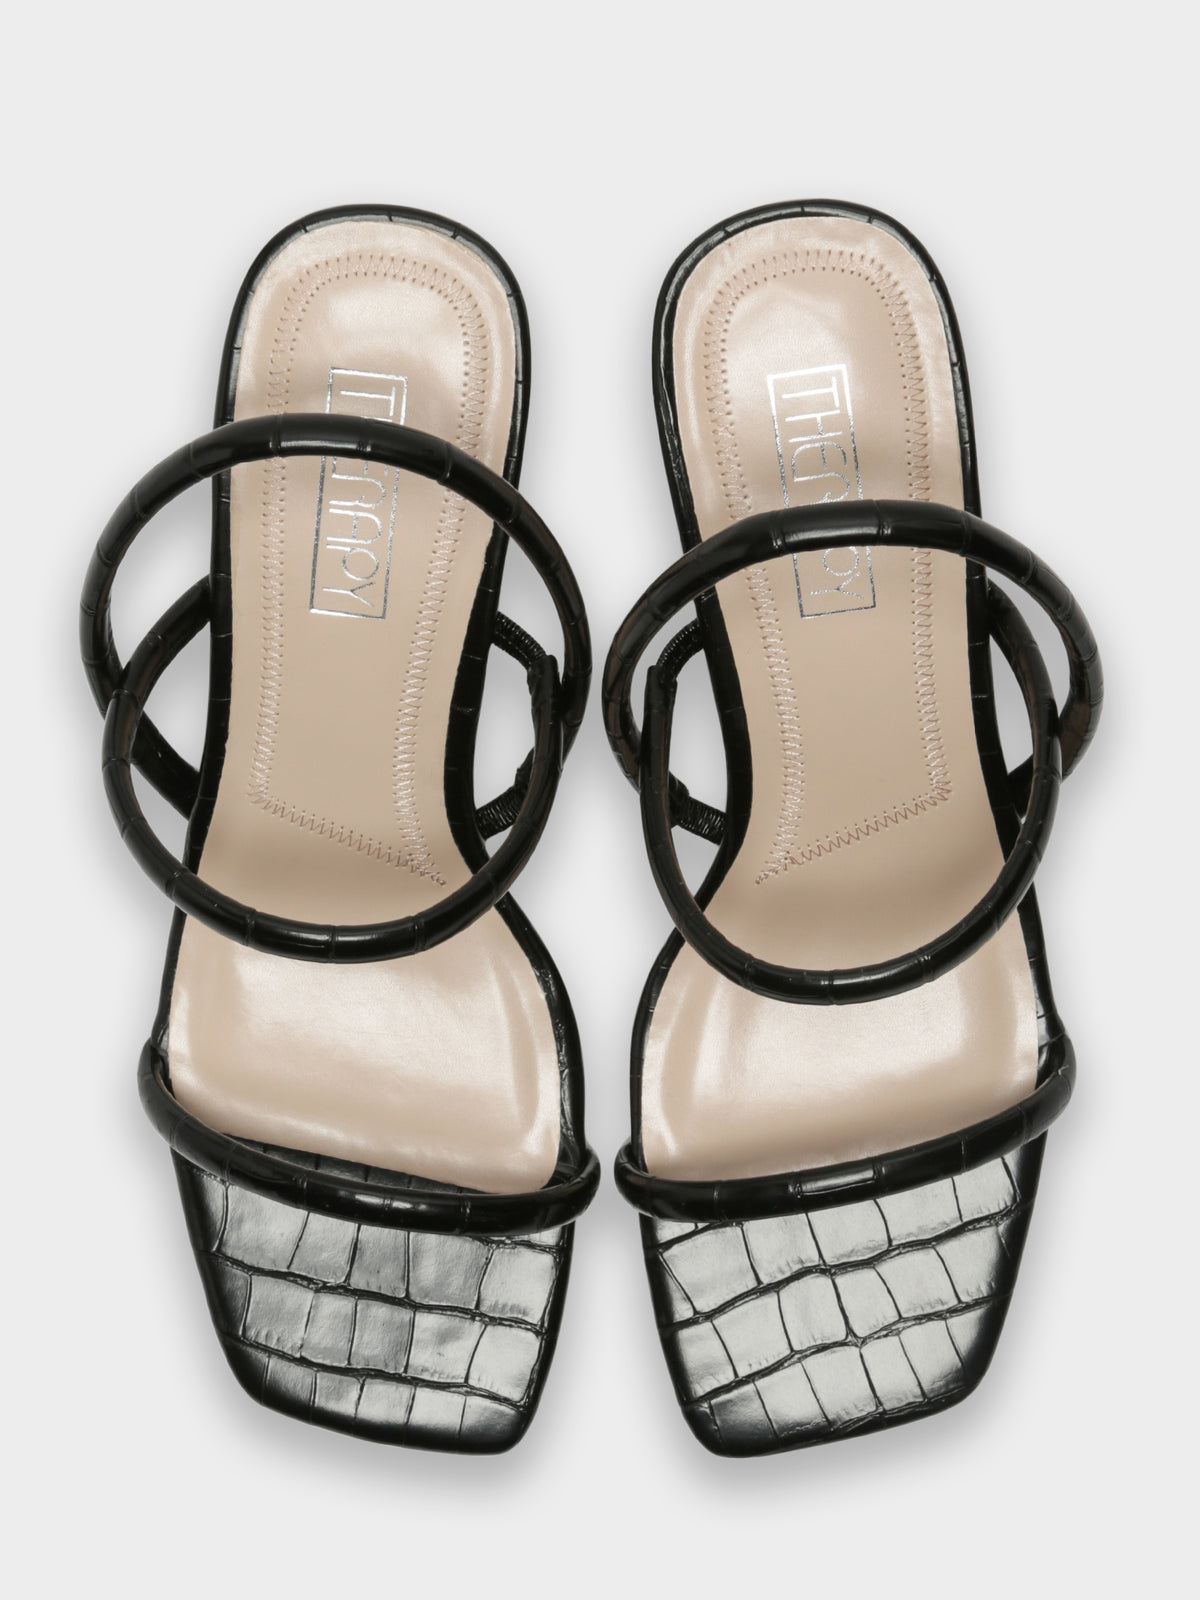 Betta Heels in Black Croc